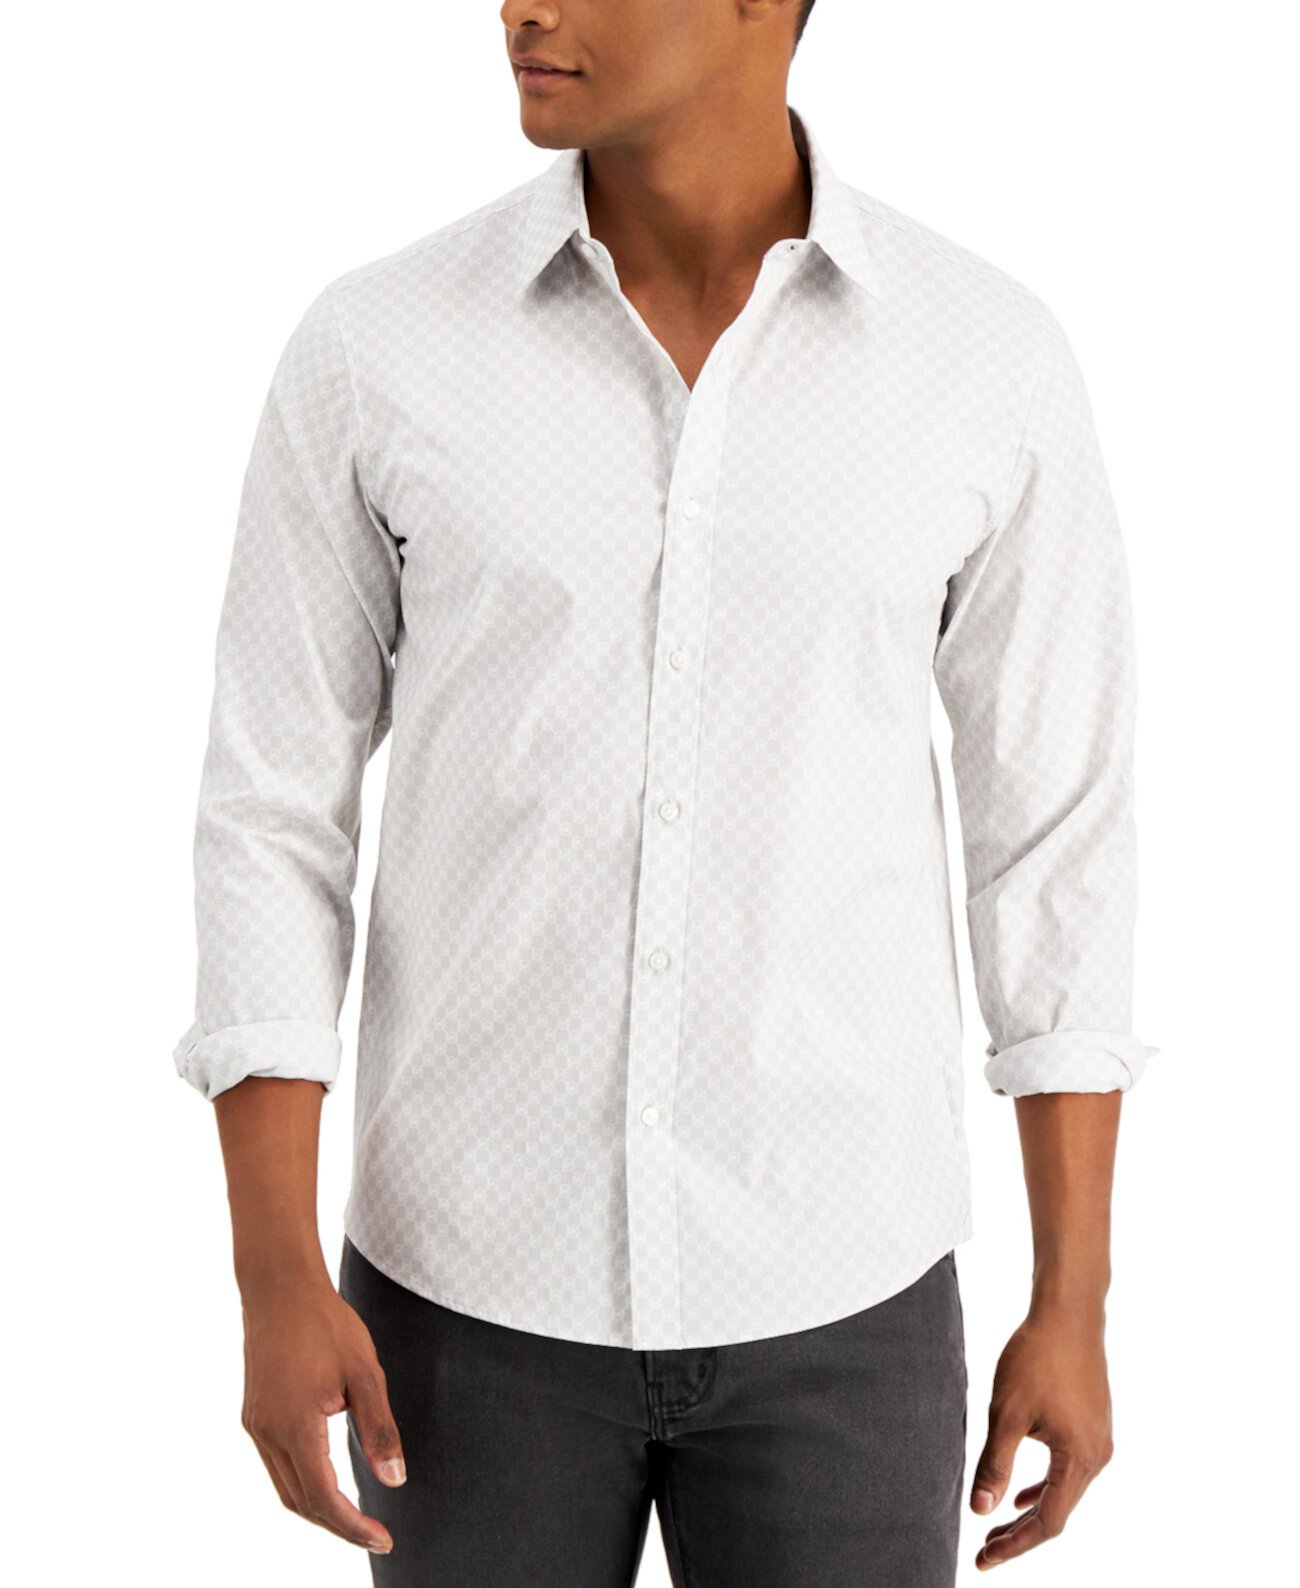 Мужская рубашка из эластичного хлопка с принтом логотипа Michael Kors